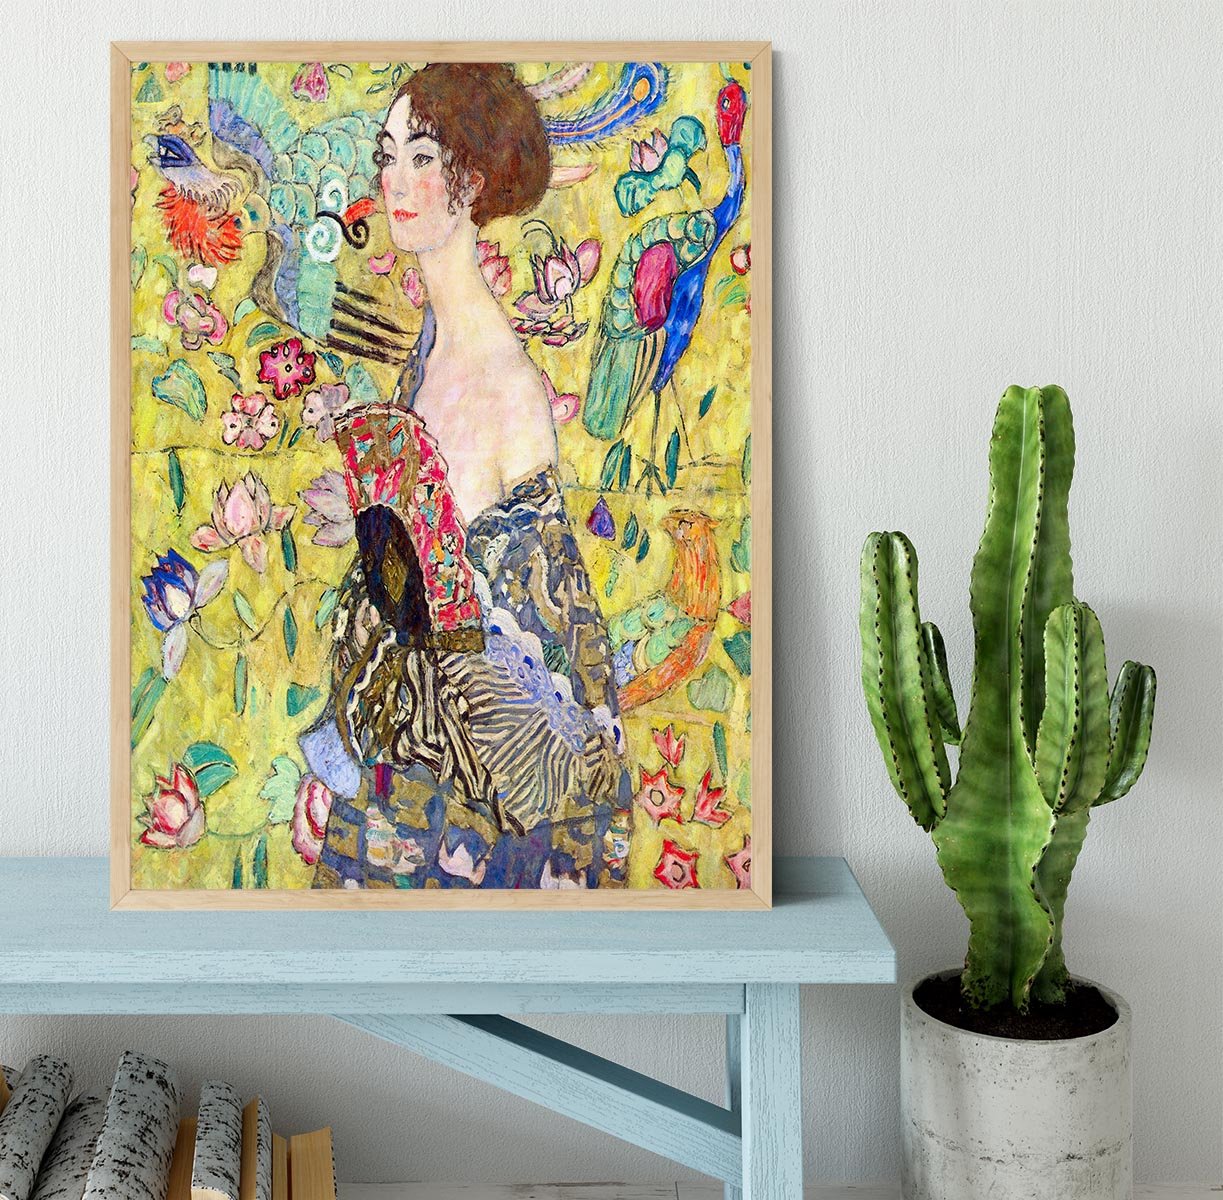 Lady with fan by Klimt Framed Print - Canvas Art Rocks - 4